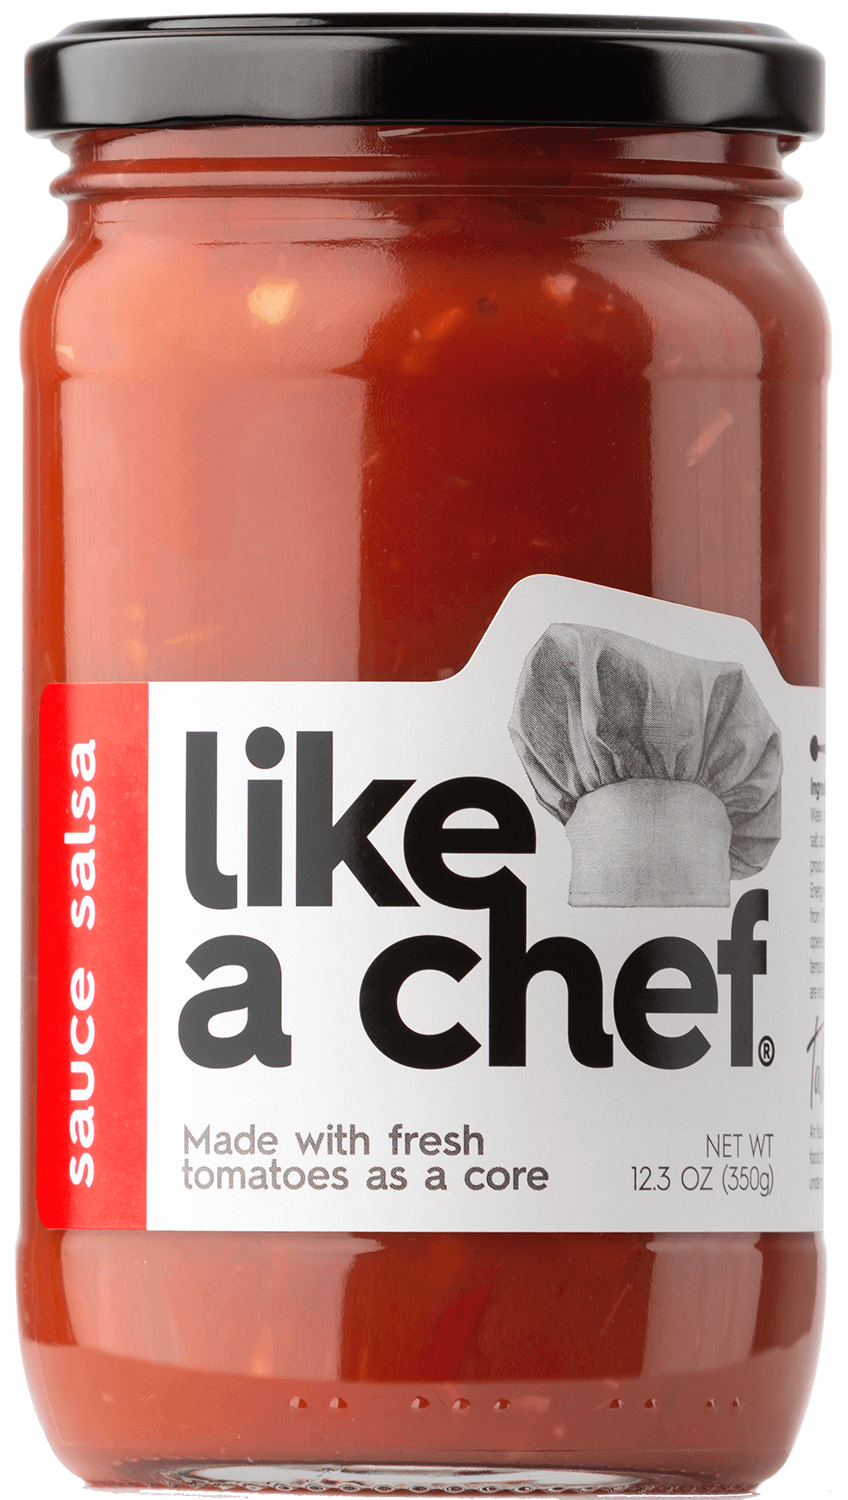 satsebeli tomato sauce like a chef Salsa tomato sauce Like a Chef